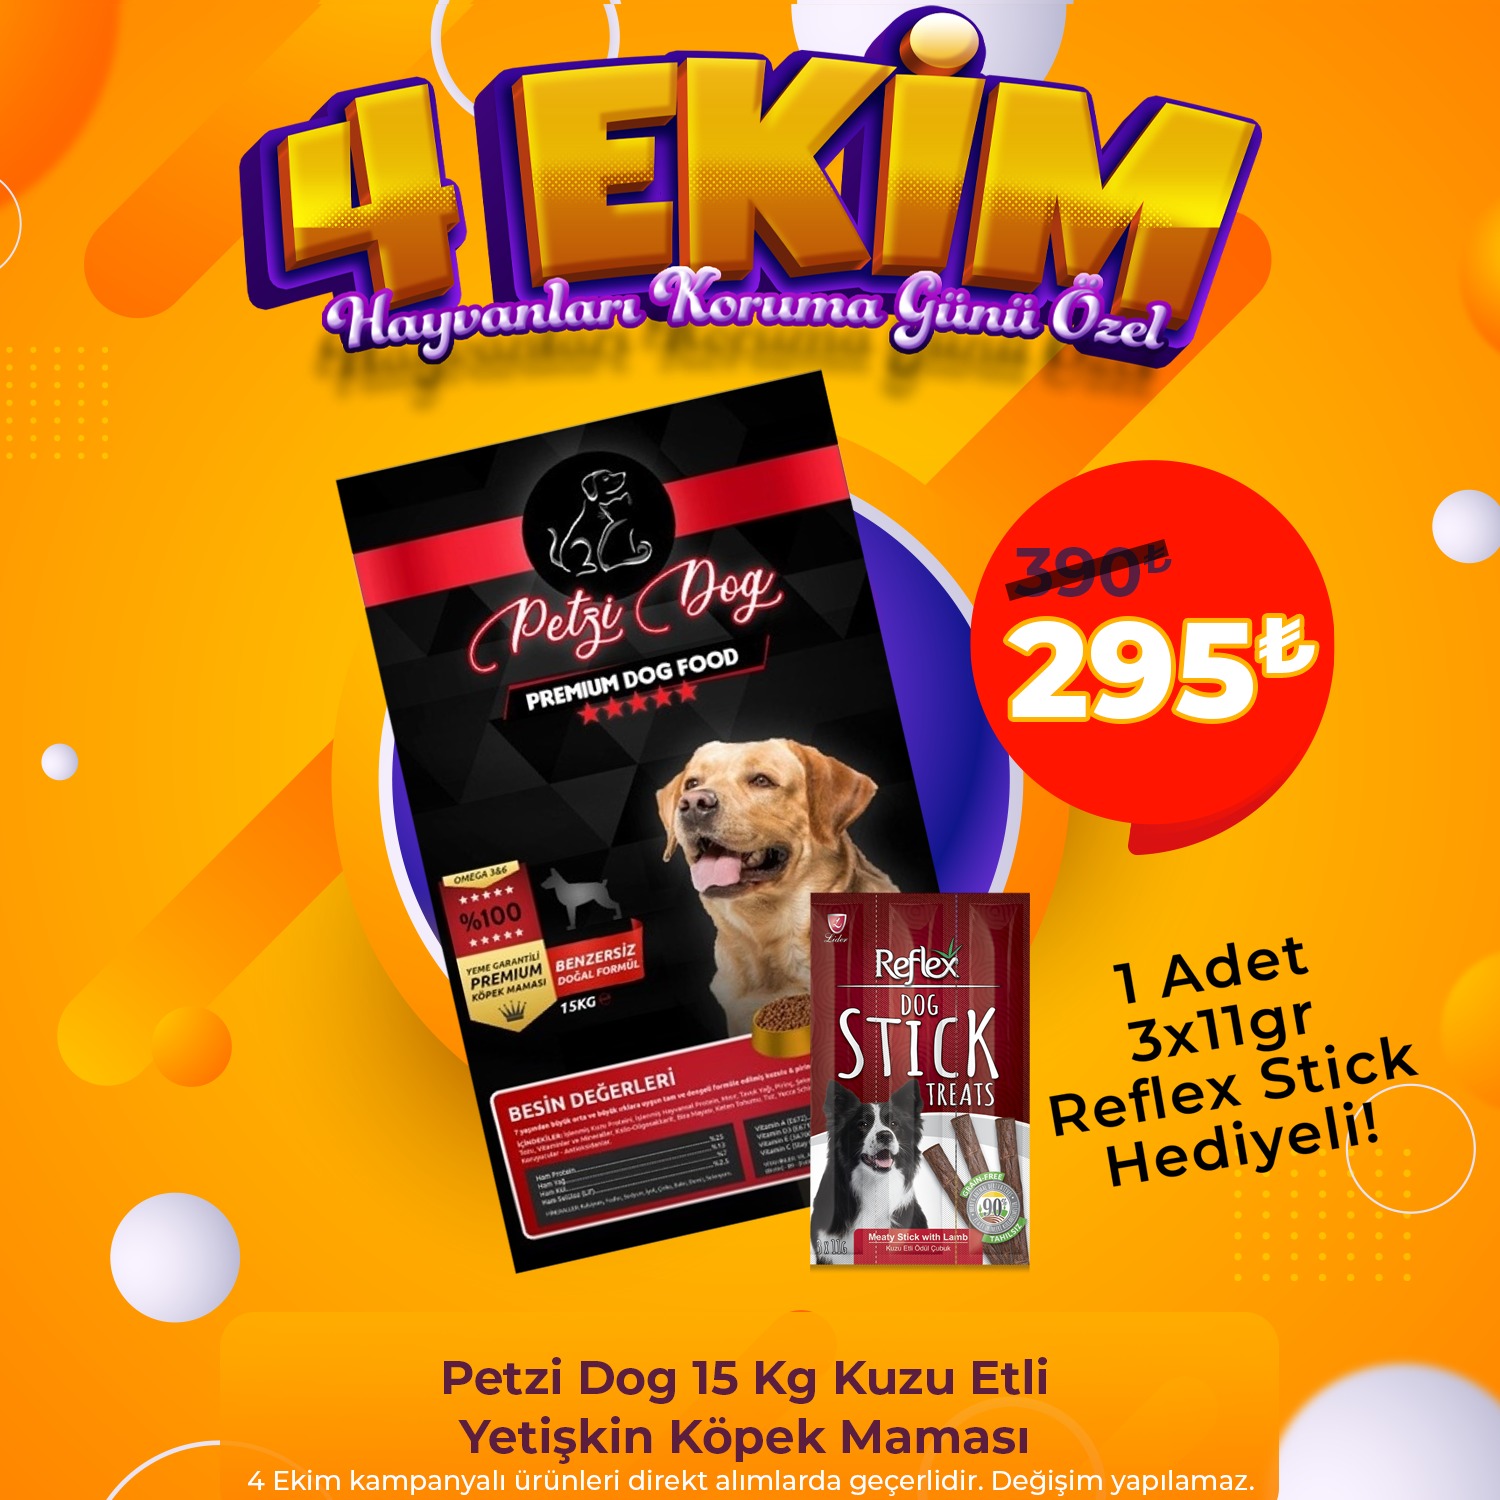 Petzi Dog 15 Kg Kuzu Etli Yetişkin Köpek Maması + 1 Adet 3 x 11gr Reflex Stick Ödül Hediyeli!